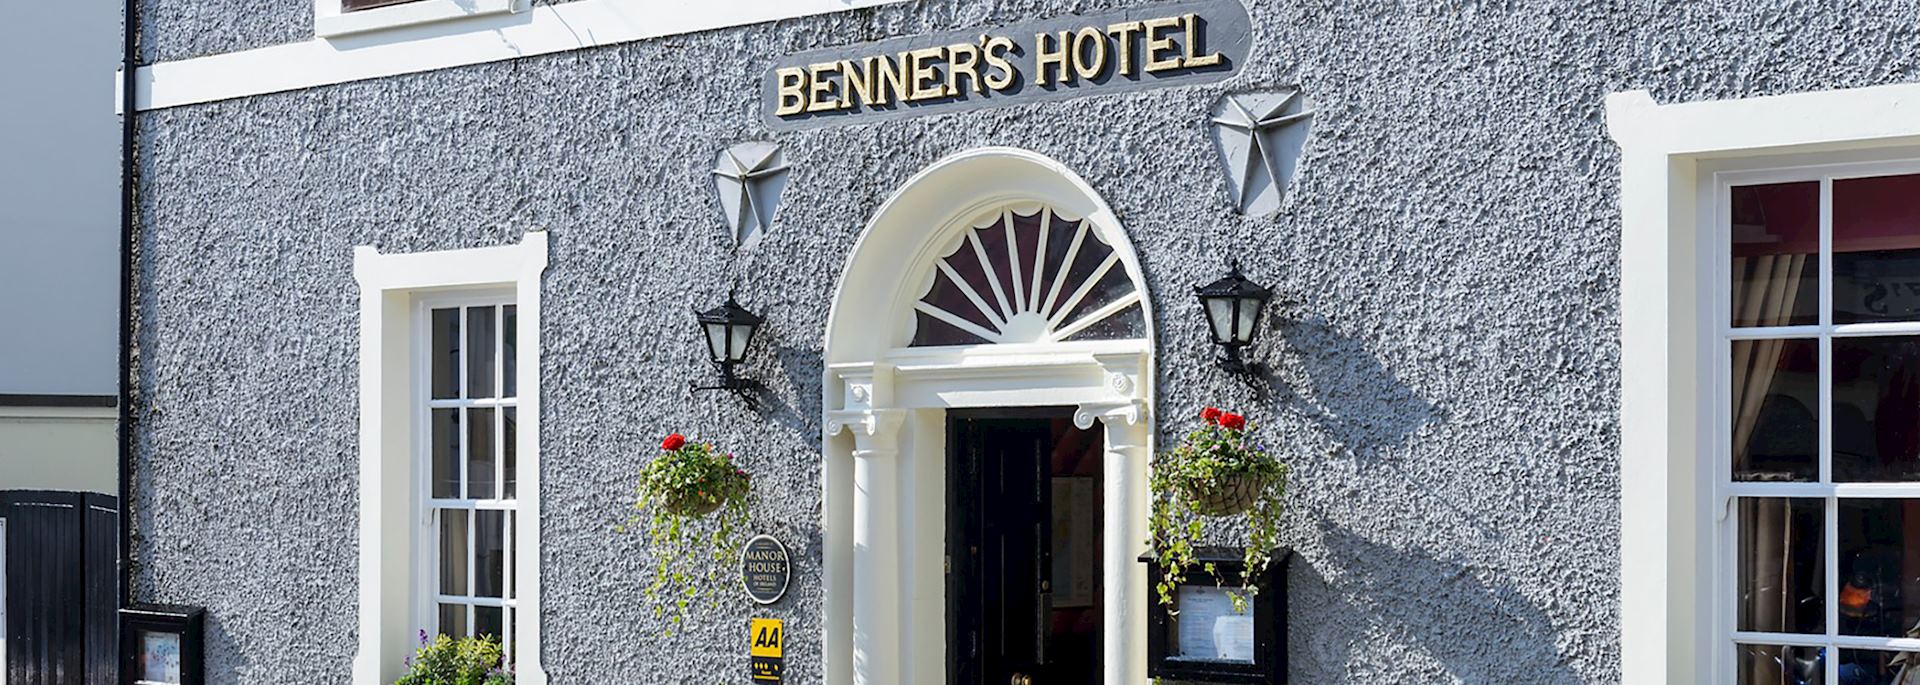 Dingle Benners Hotel, Dingle Peninsula